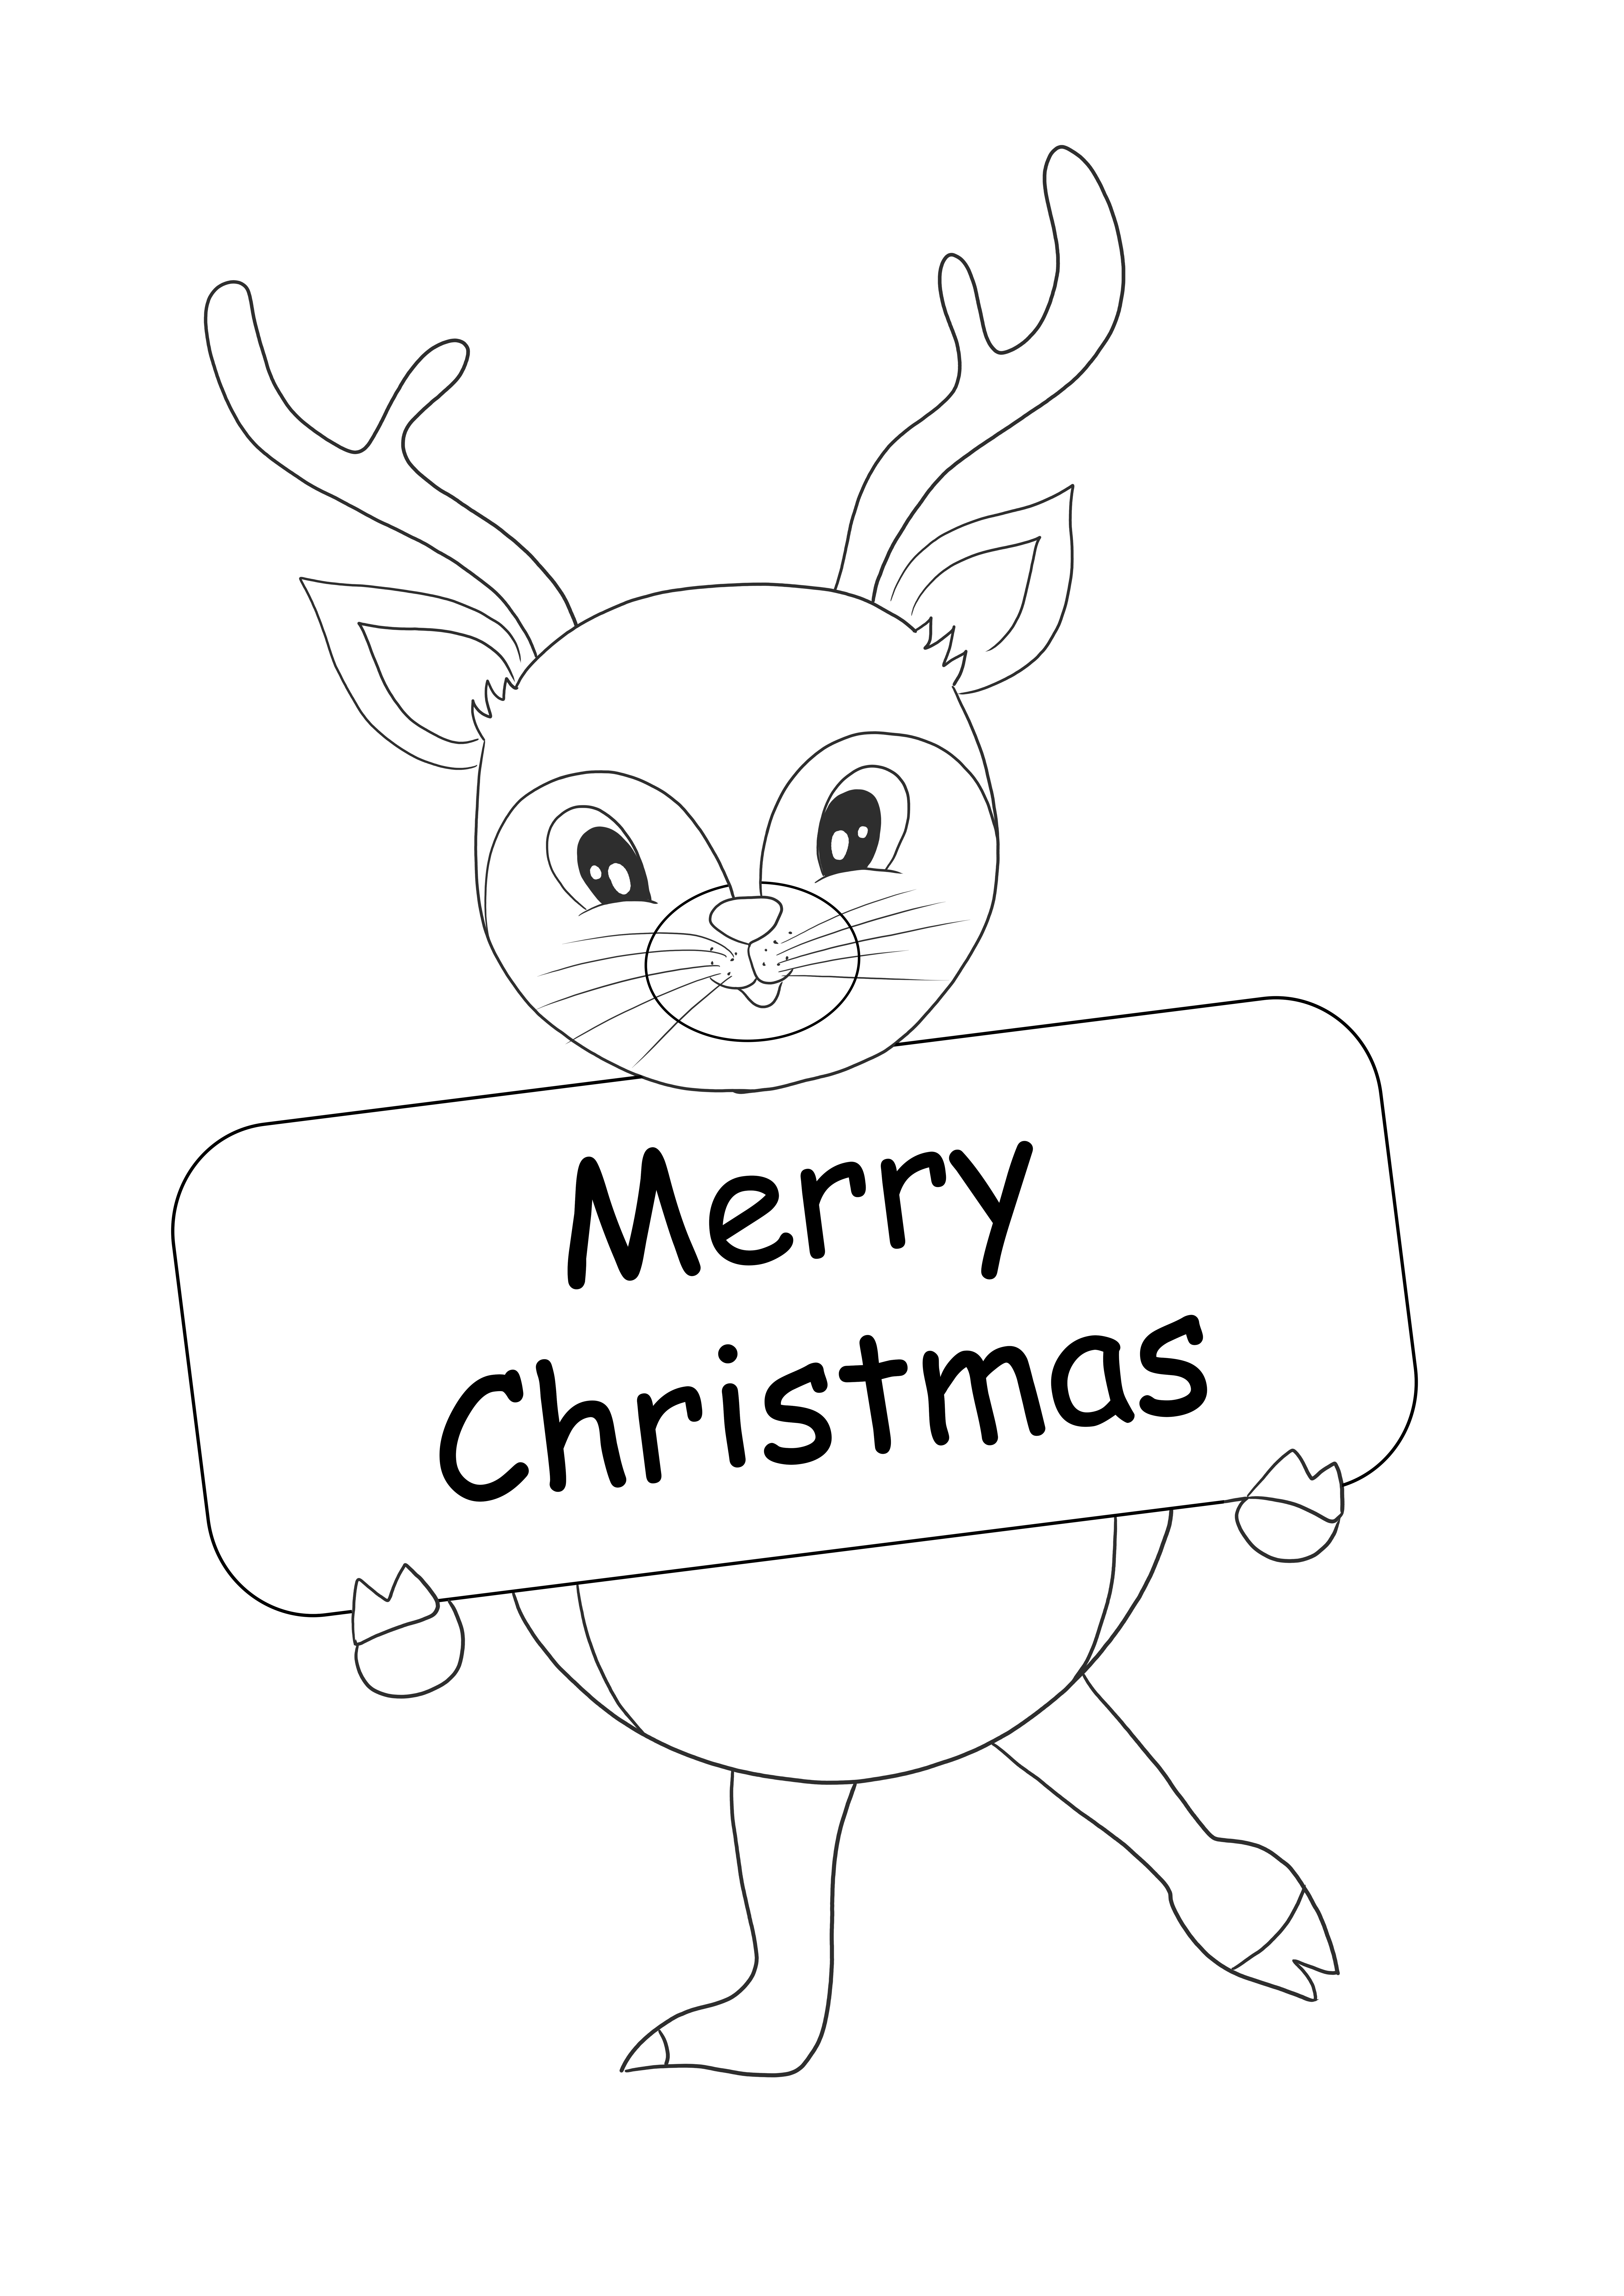 Uma rena fofa segurando um cartão de Feliz Natal para imprimir gratuitamente para colorir